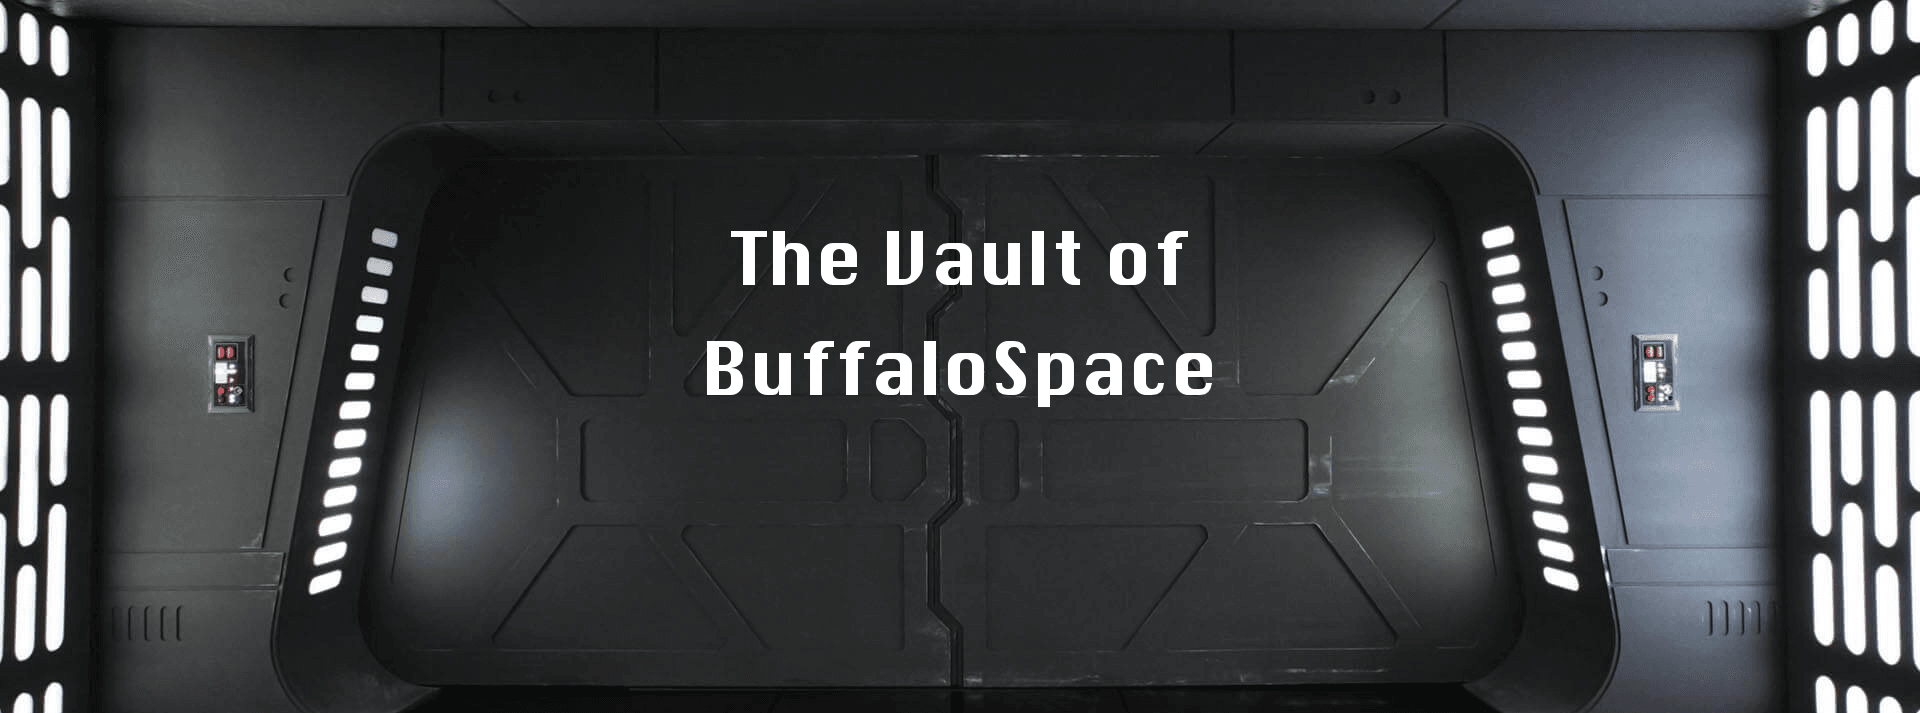 BuffaloSpace-Vault banner